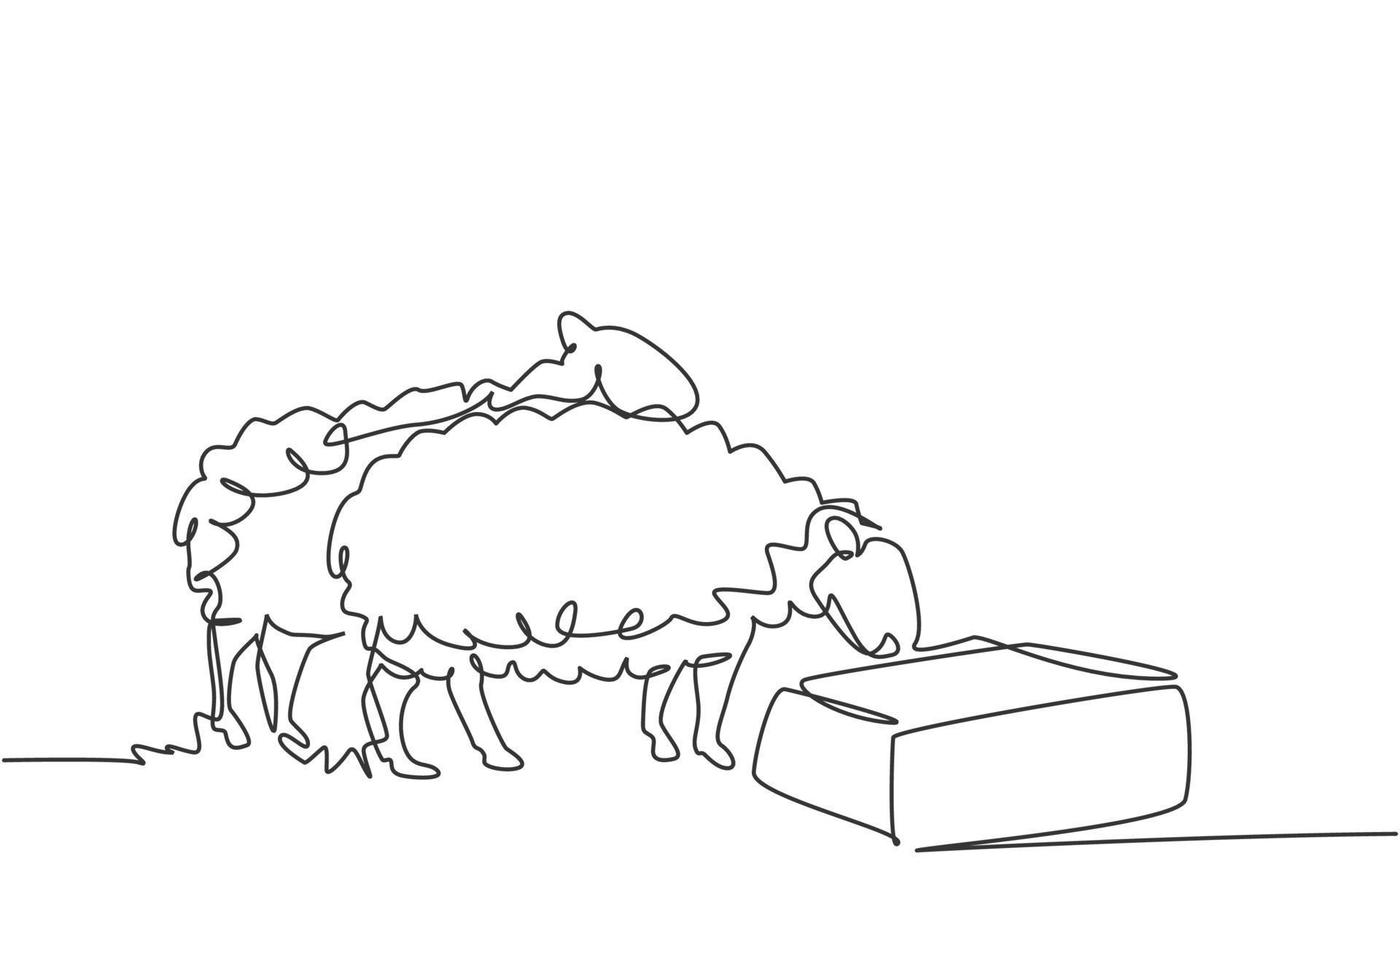 un seul dessin d'une seule ligne des moutons est nourri pour être en bonne santé et produire le meilleur lait et la meilleure viande. concept minimal de défi agricole. ligne continue moderne dessiner illustration vectorielle graphique de conception. vecteur